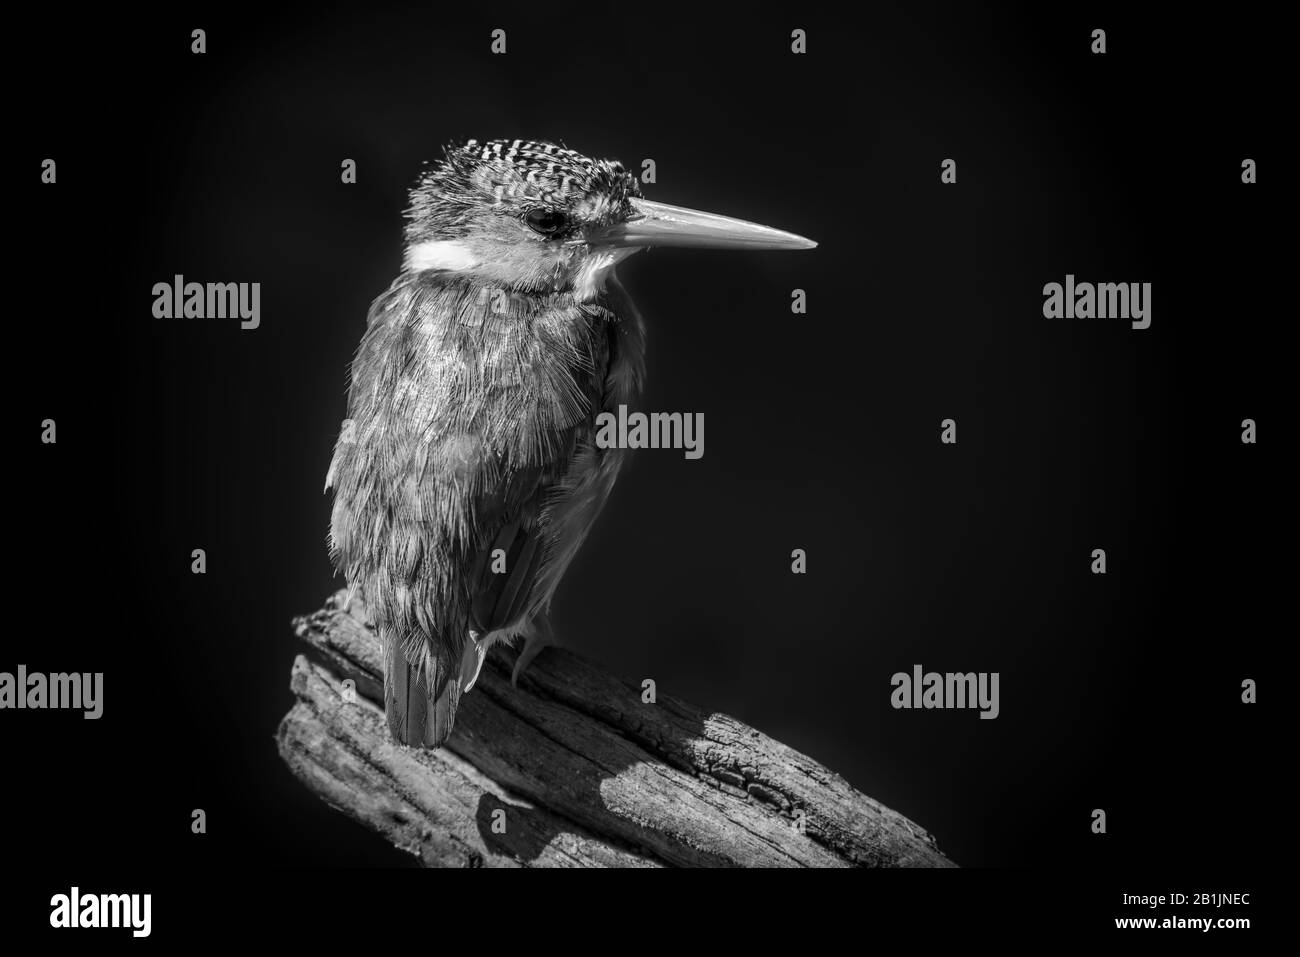 Un kingfisher malachite est perché dans le profil sur une souche d'arbre mort au soleil, en regardant l'appareil photo. Il a des yeux bruns, un bec rouge, un brun, la merde Banque D'Images